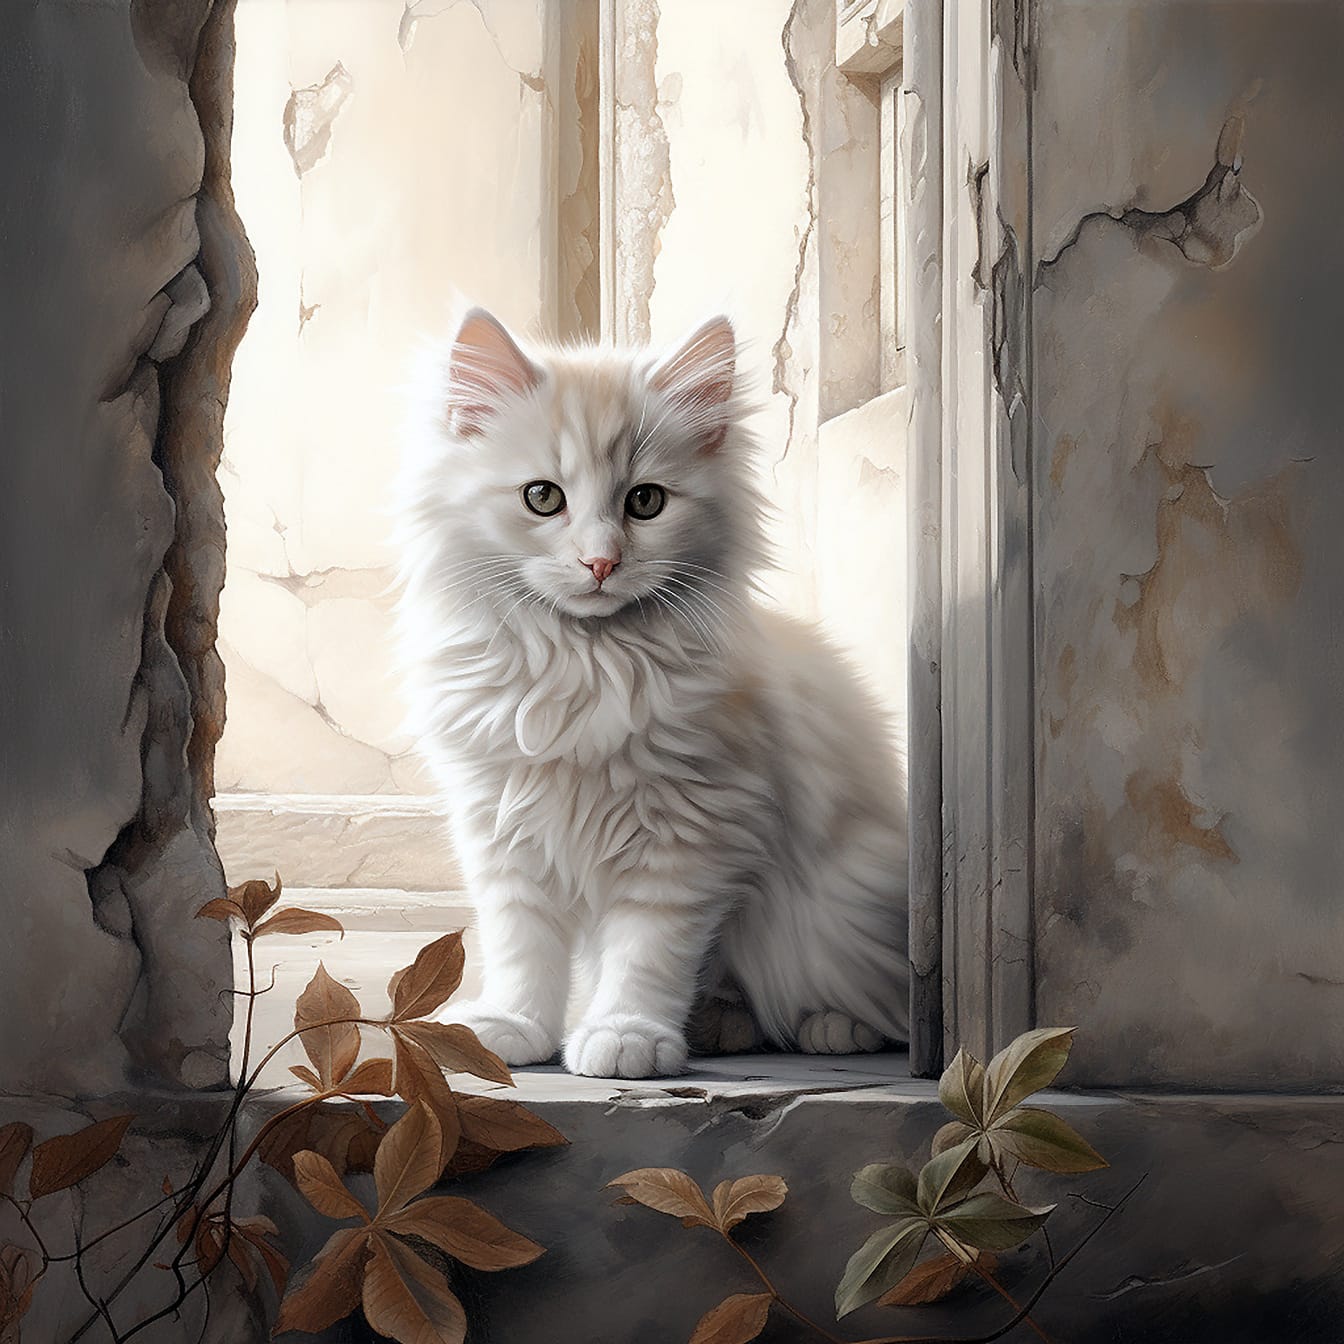 Chú mèo con màu xám đáng yêu ngồi trong phòng mục nát minh họa